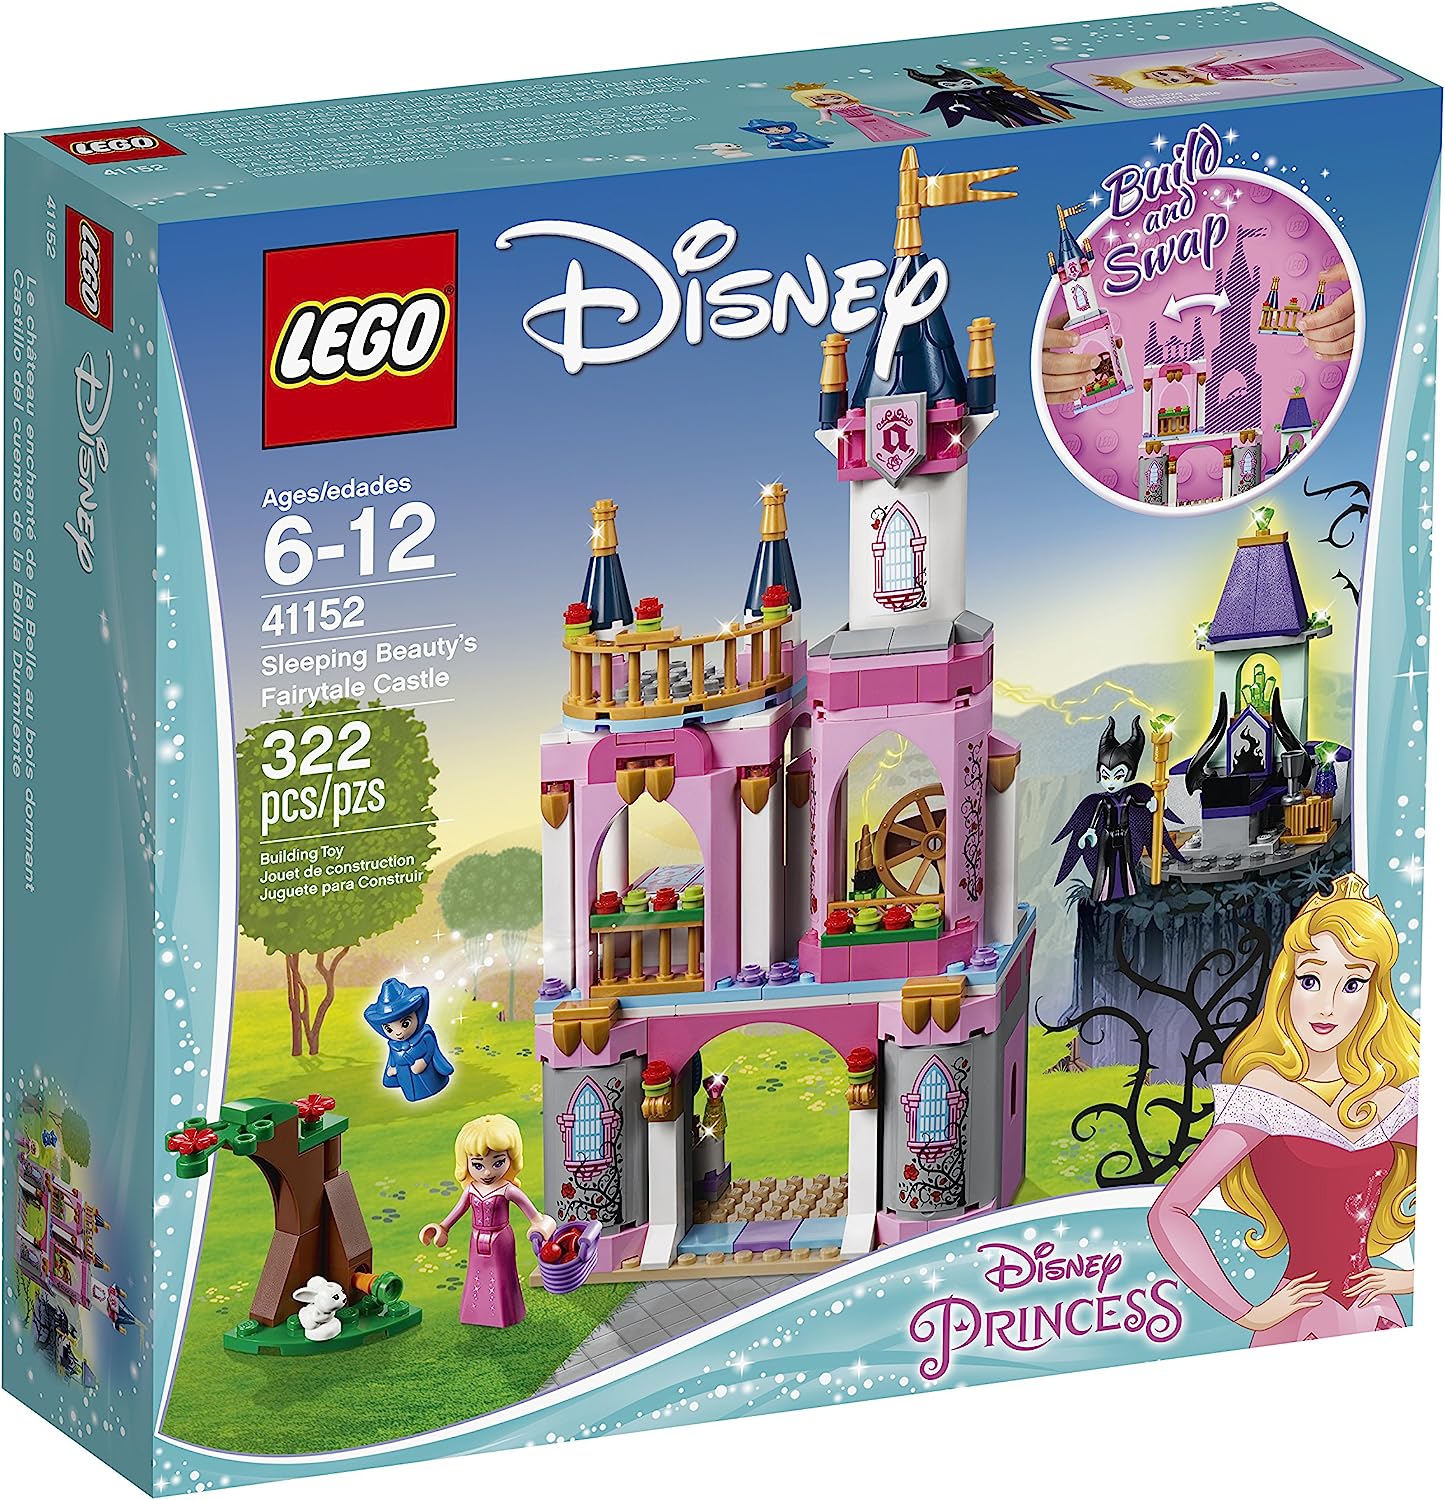 楽天市場 レゴ ディズニープリンセス 送料無料 Lego Disney Princess Sleeping Beauty S Fairytale Castle Building Kit 322 Piece レゴ ディズニープリンセス Angelica